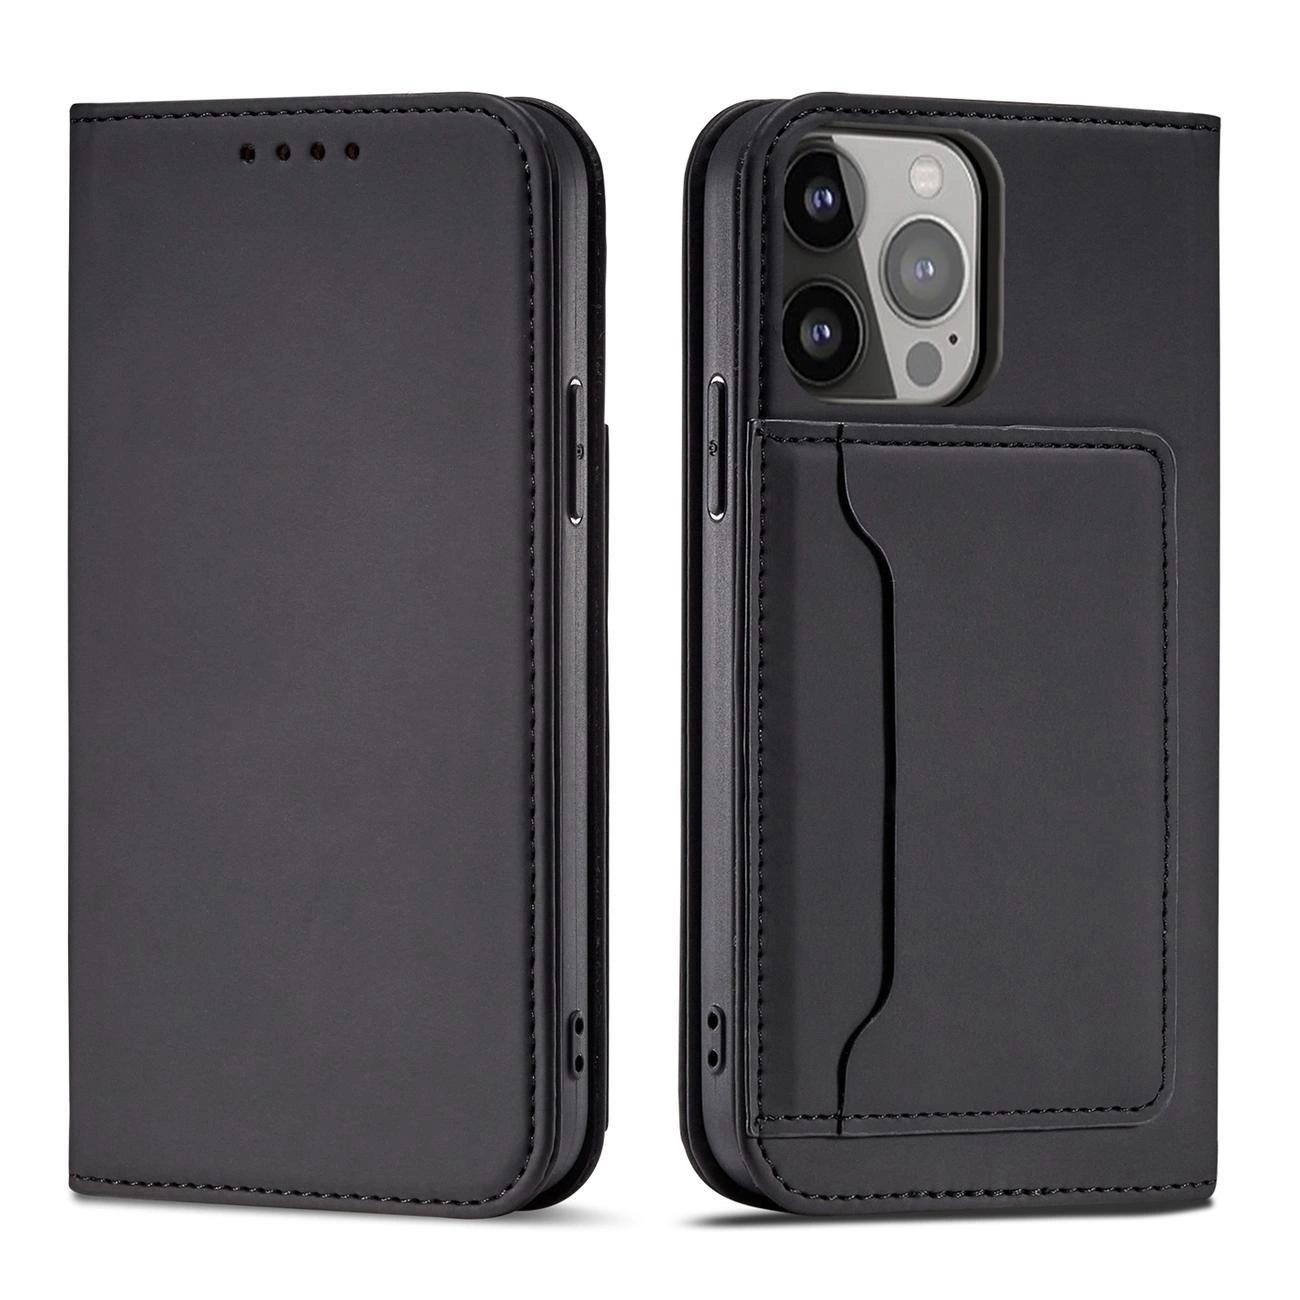 Hurtel Magnet Card Case pro iPhone 13 Pro card wallet case card holder black